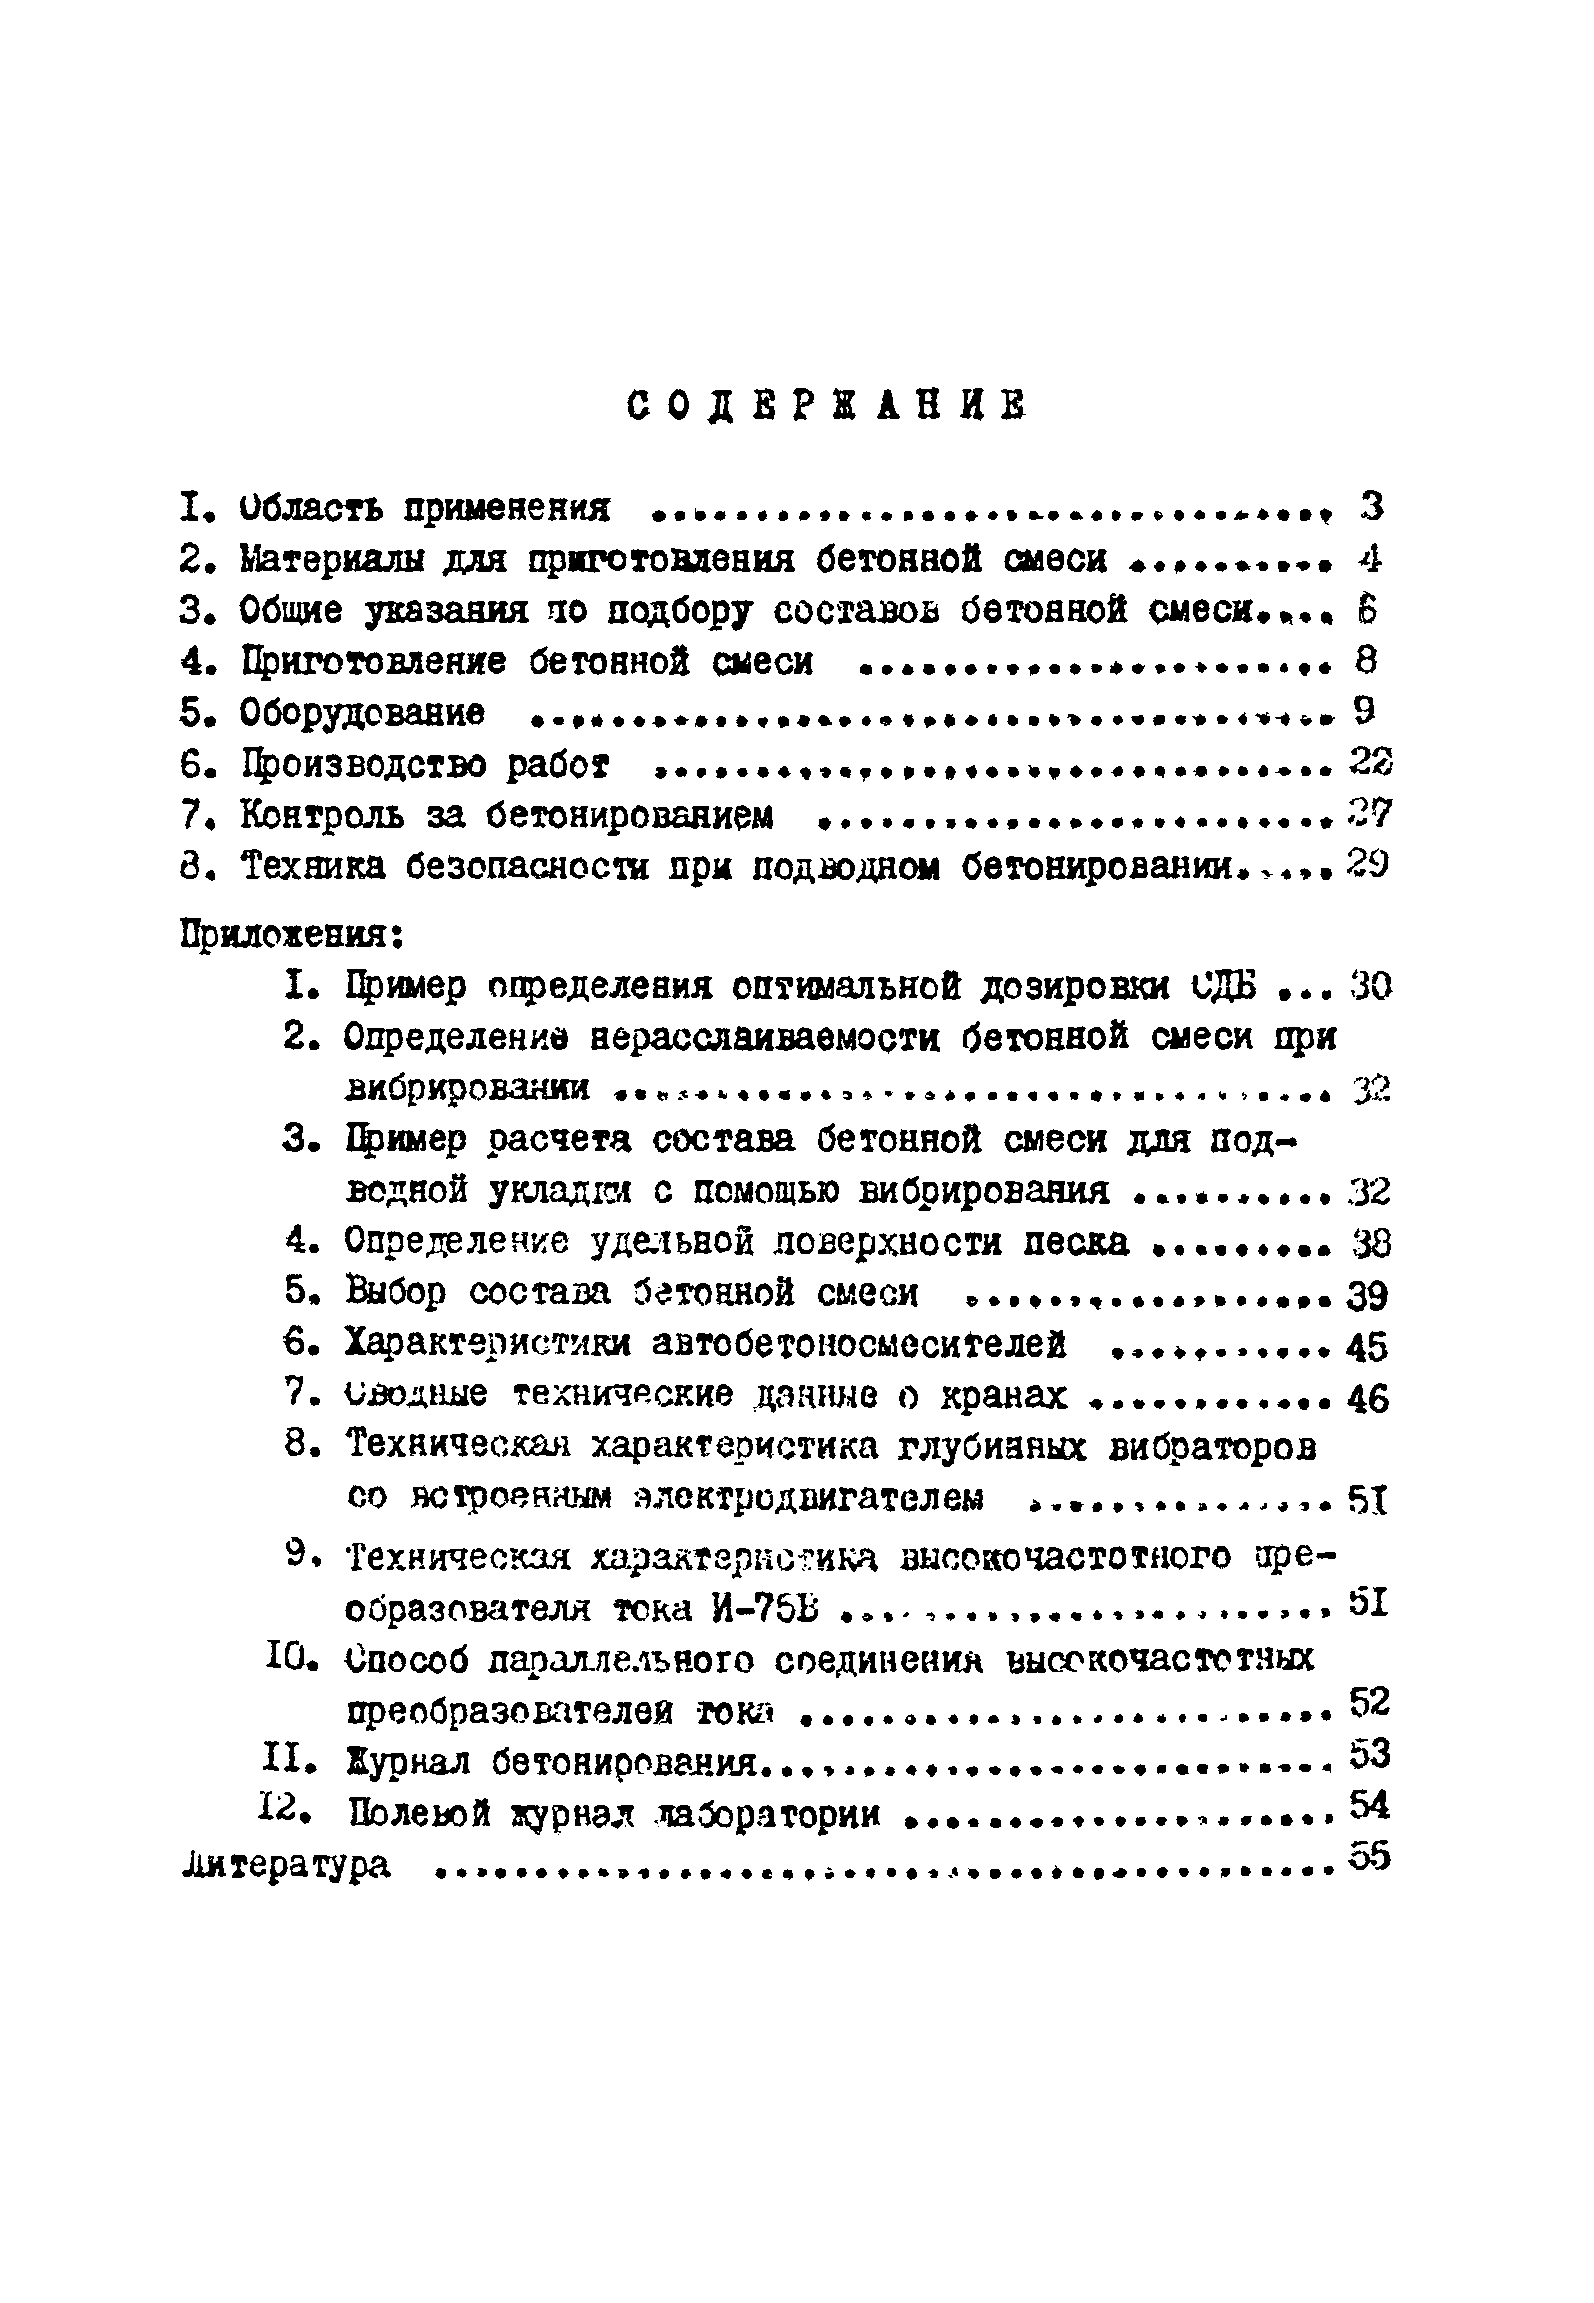 ВСН 261-77/ММСС СССР